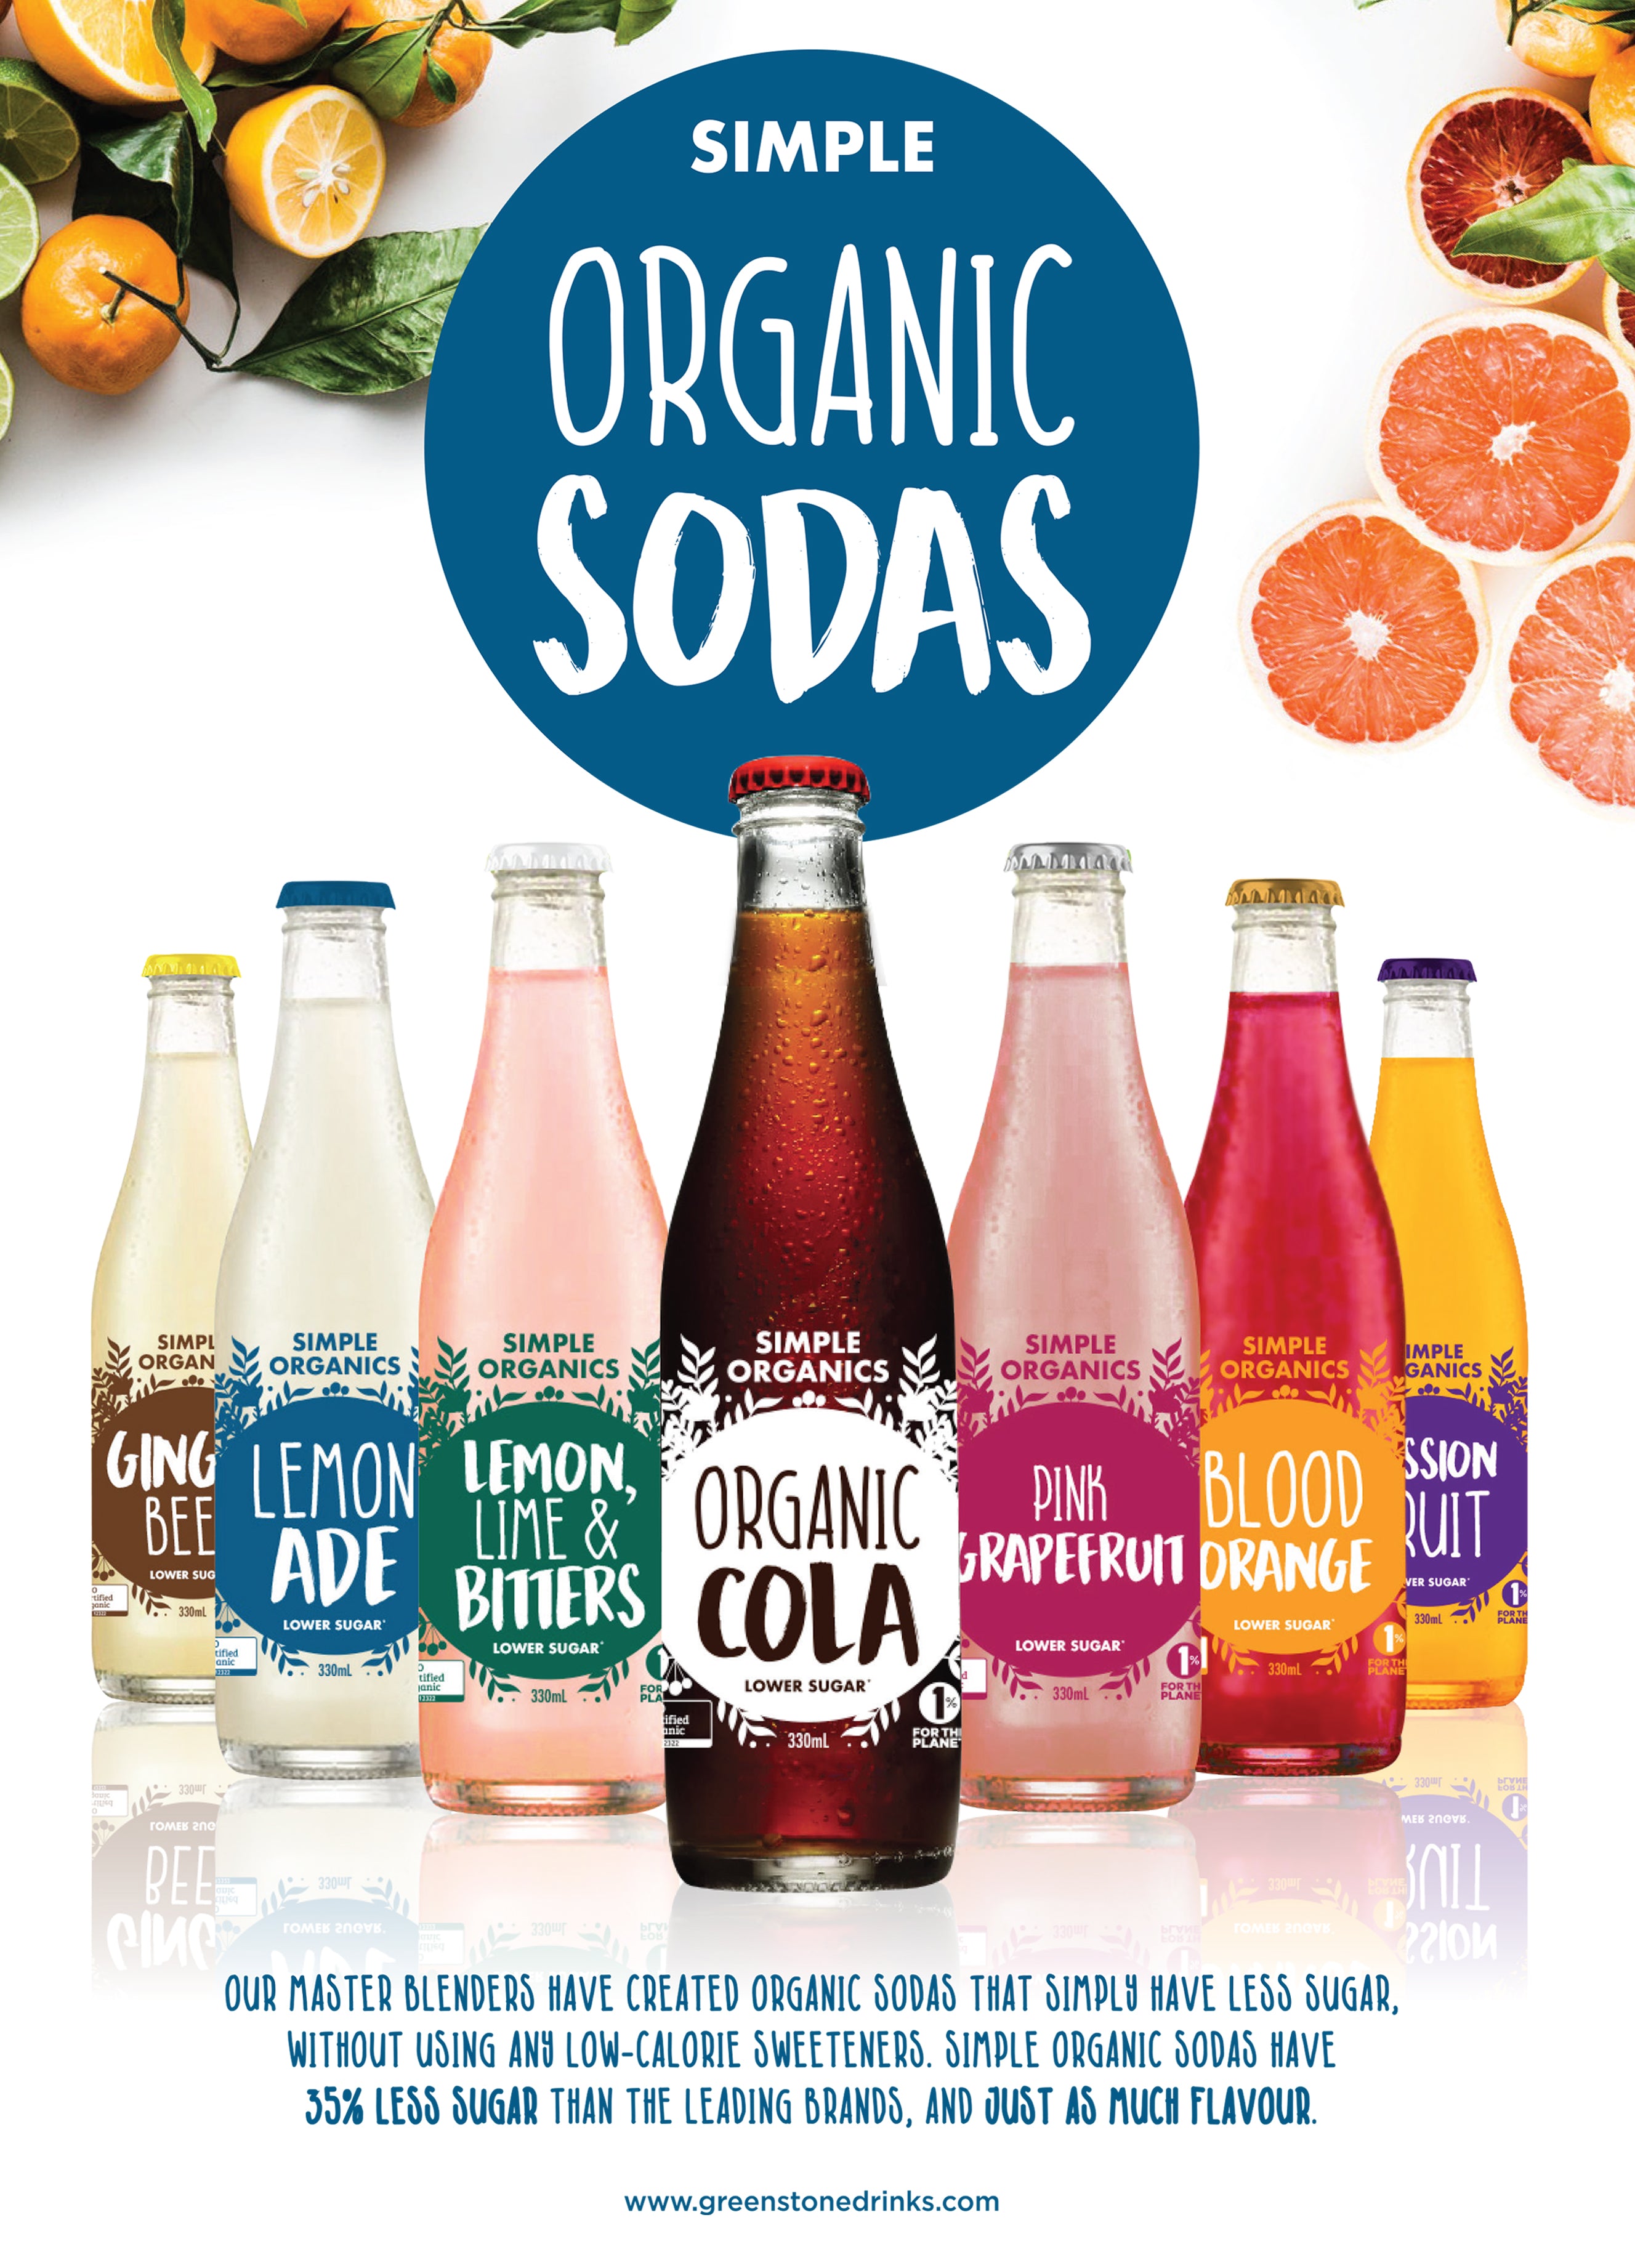 Organic sodas